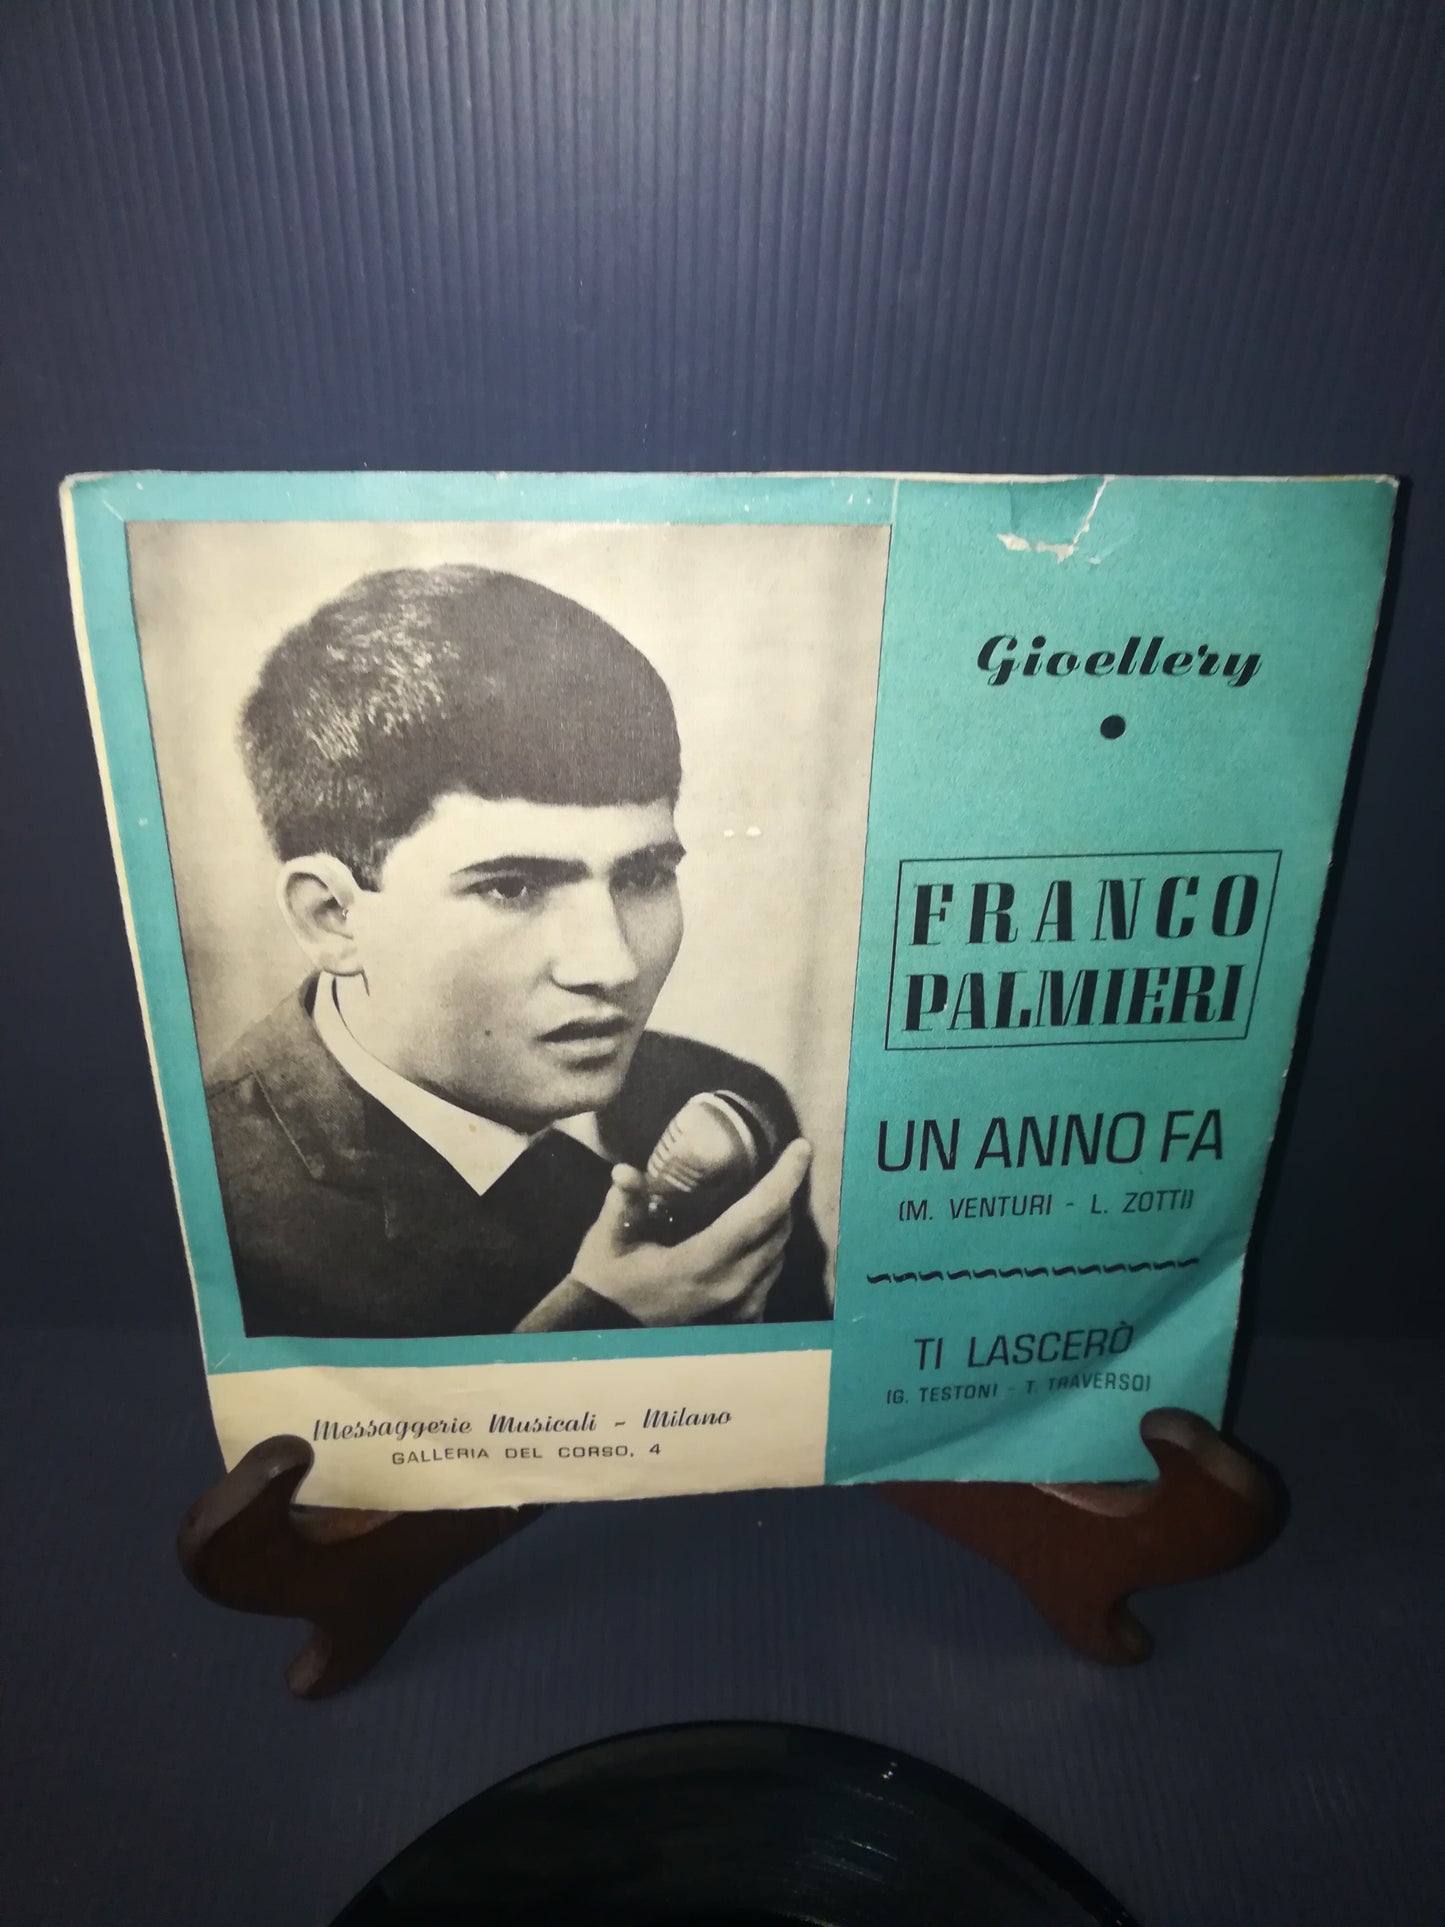 Un Anno Fa/Ti Lascerò" Franco Palmieri 45 Giri

Edito da Gioellery 